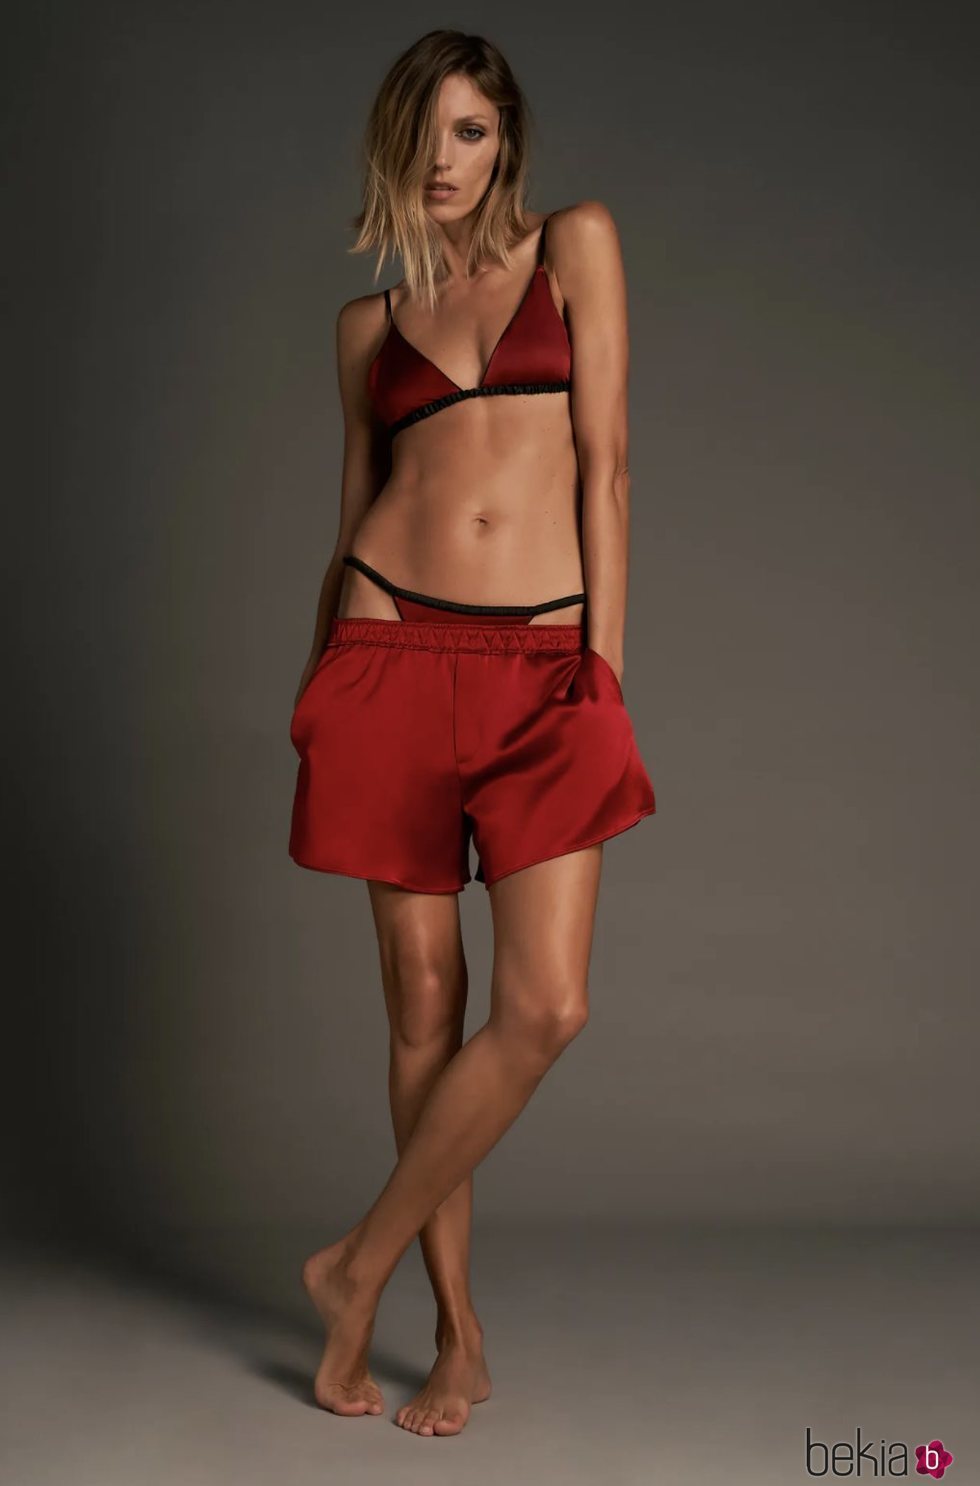 Shorts satén en color rojo de la colección 'Love' de Zara